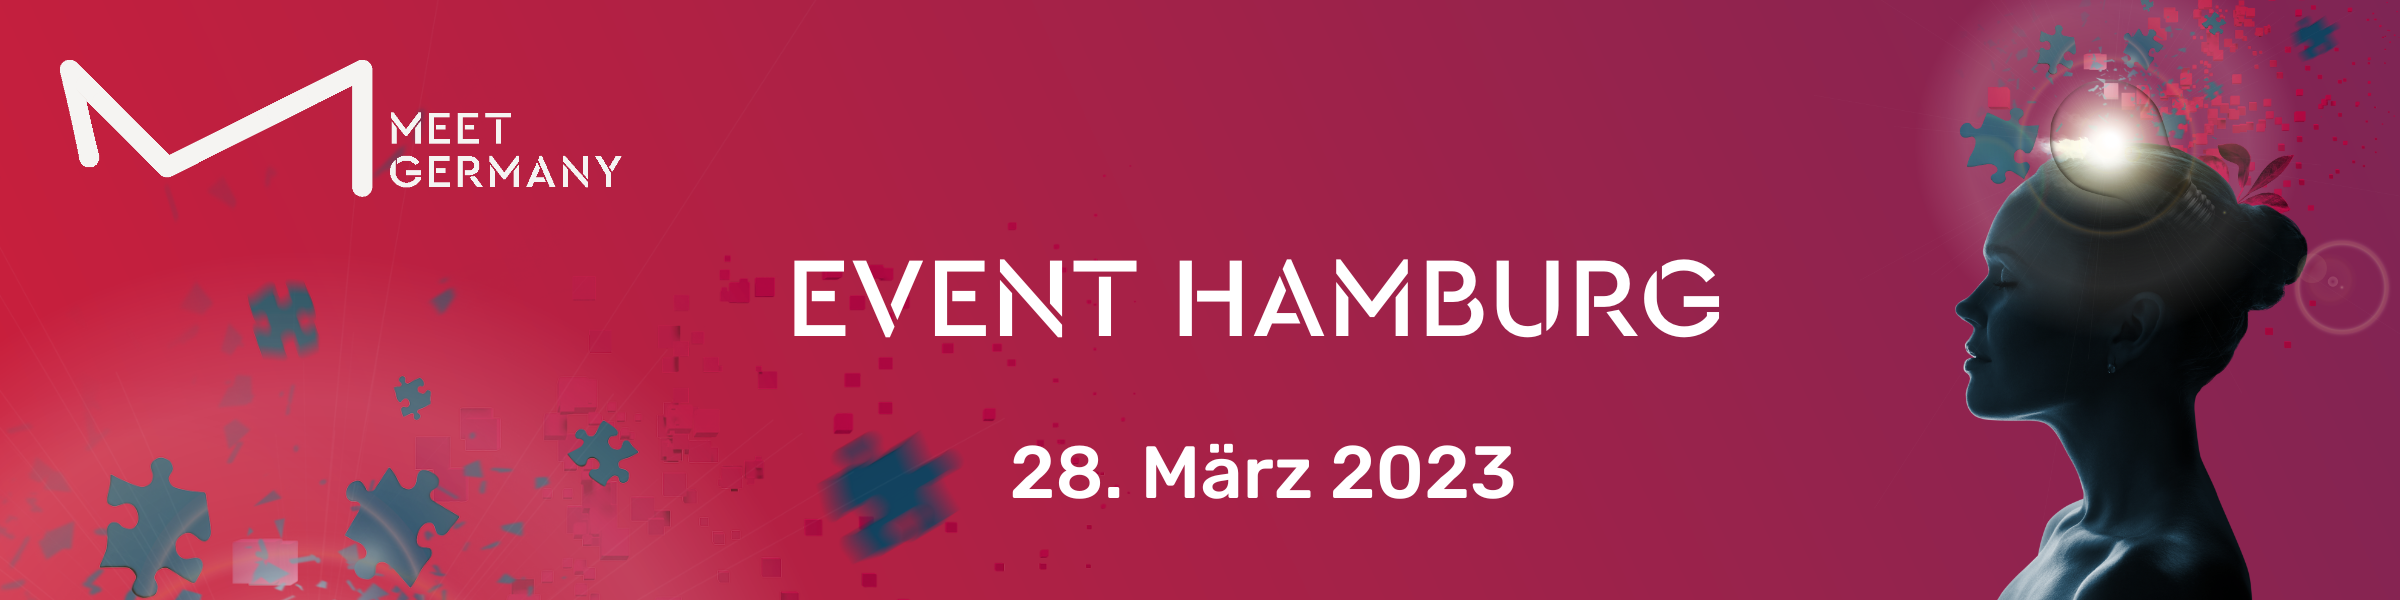 Header-Bild für MEET GERMANY EVENT Hamburg 2023